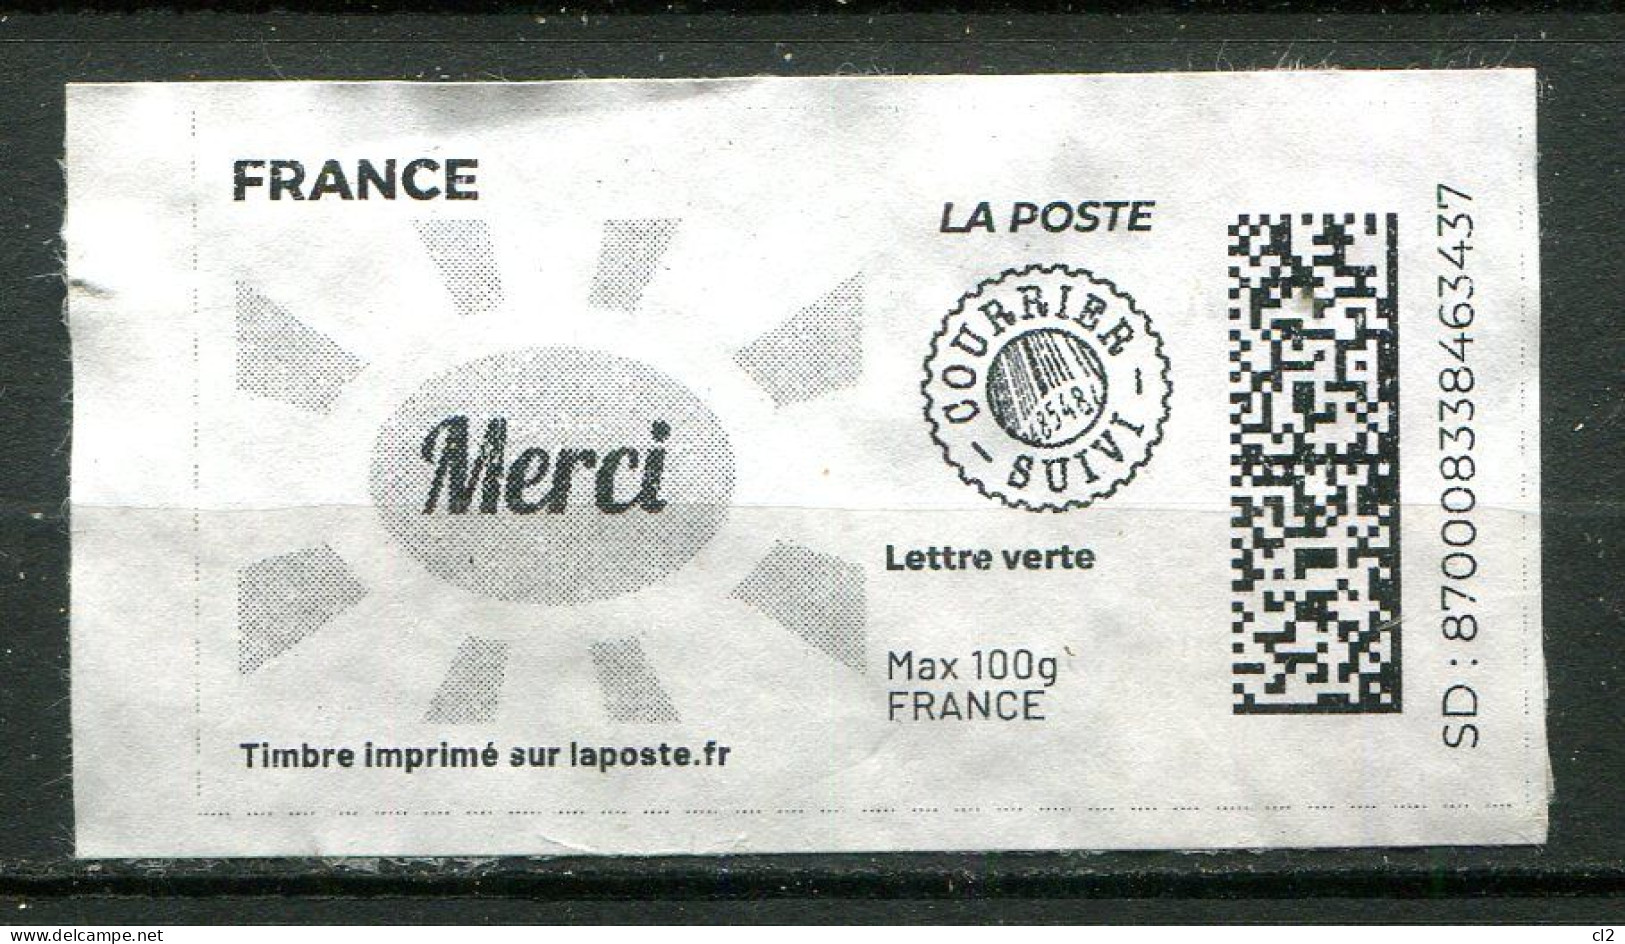 FRANCE - Timbre Imprimé Sur Laposte.fr - Lettre Verte - Courrier Suivi - Max 100g - MERCI - Francobolli Stampabili (Montimbrenligne)